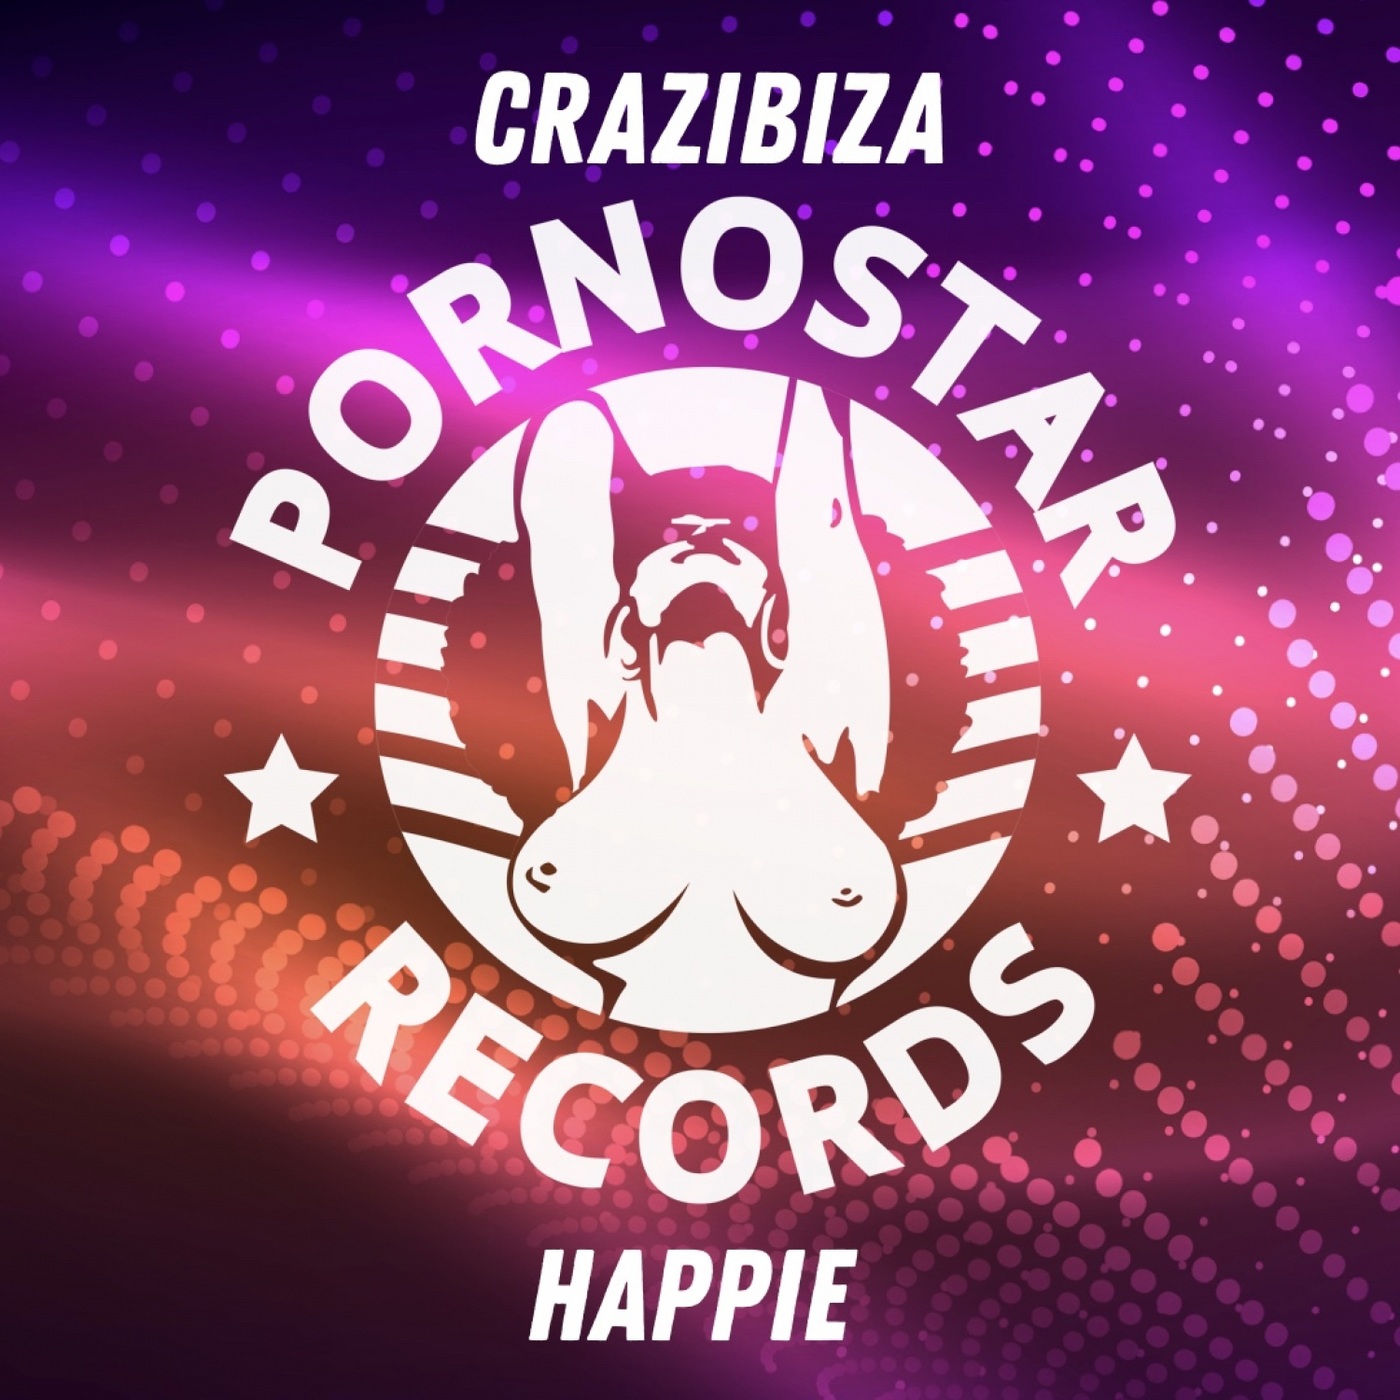 Crazibiza - Happie / PornoStar Records